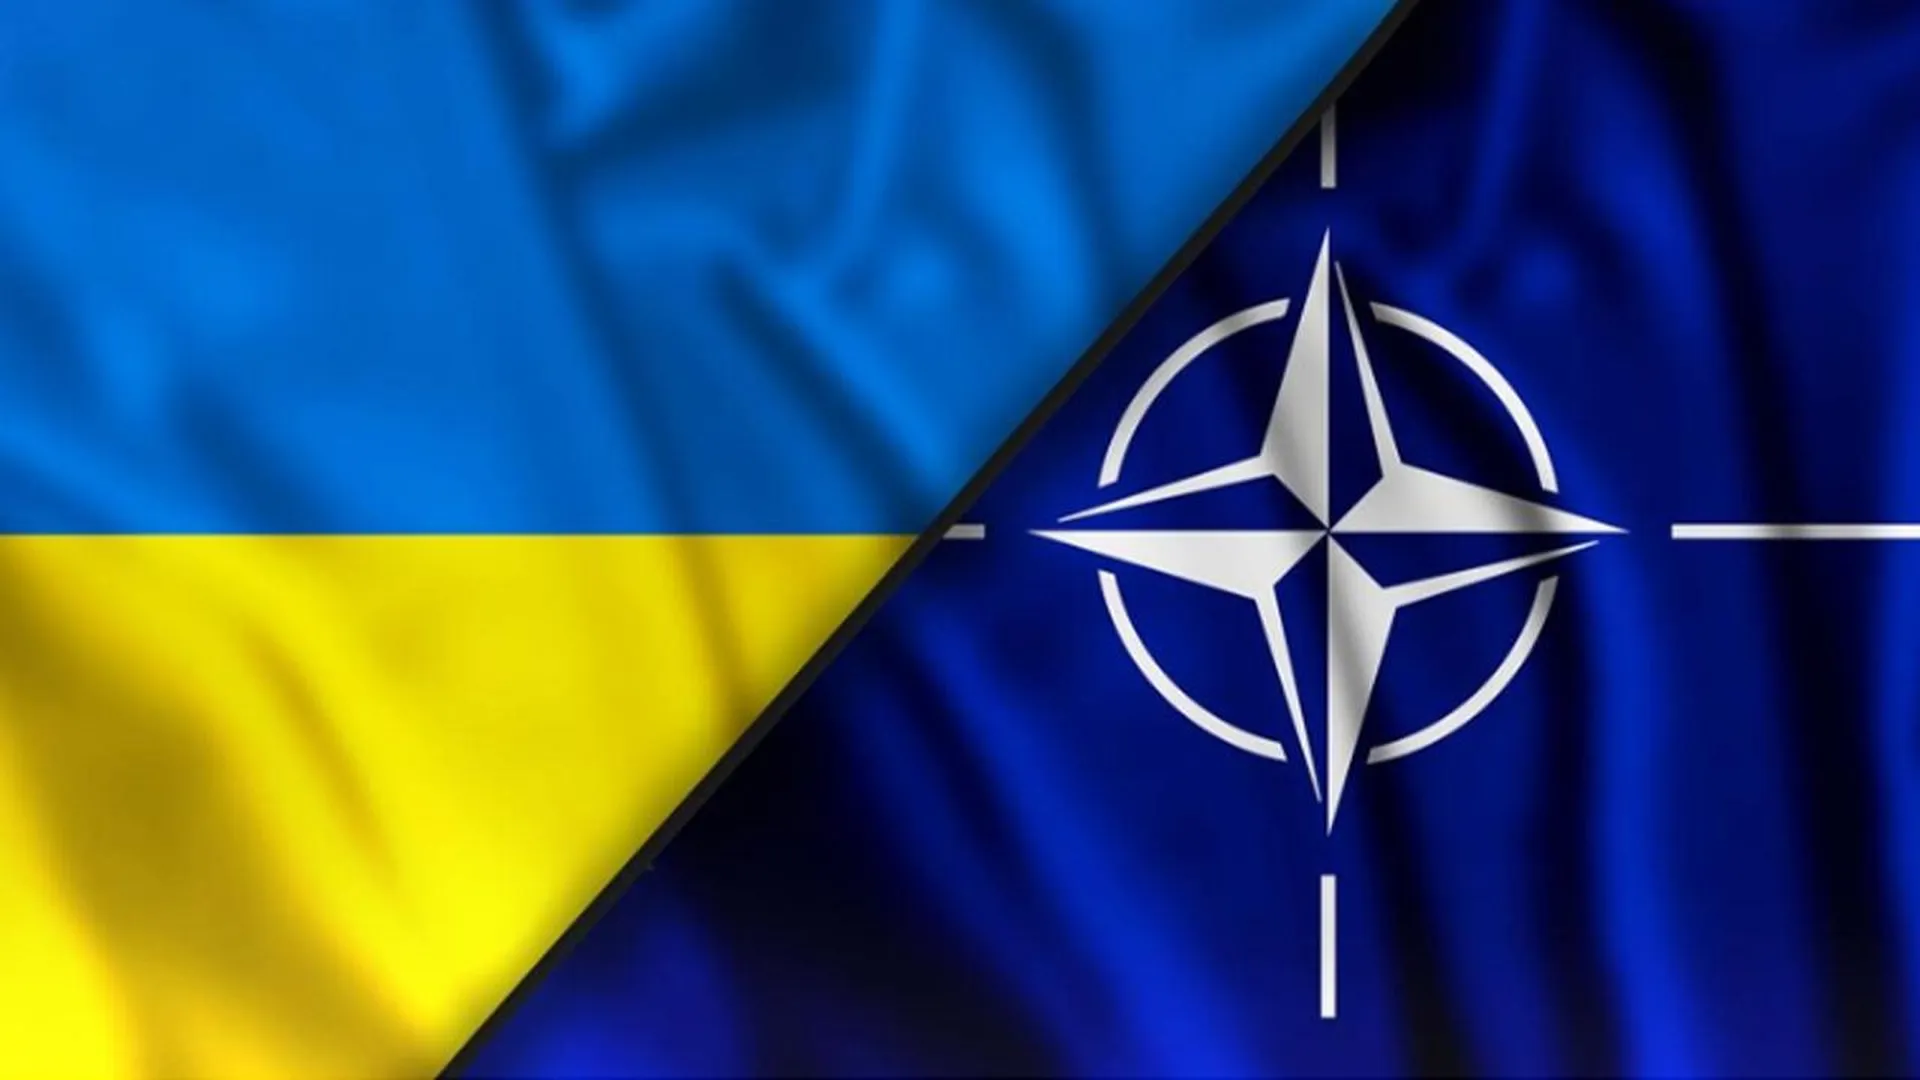 Военный плацдарм и центр преступности: политолог Колчин рассказал, что НАТО хочет сделать с Украиной